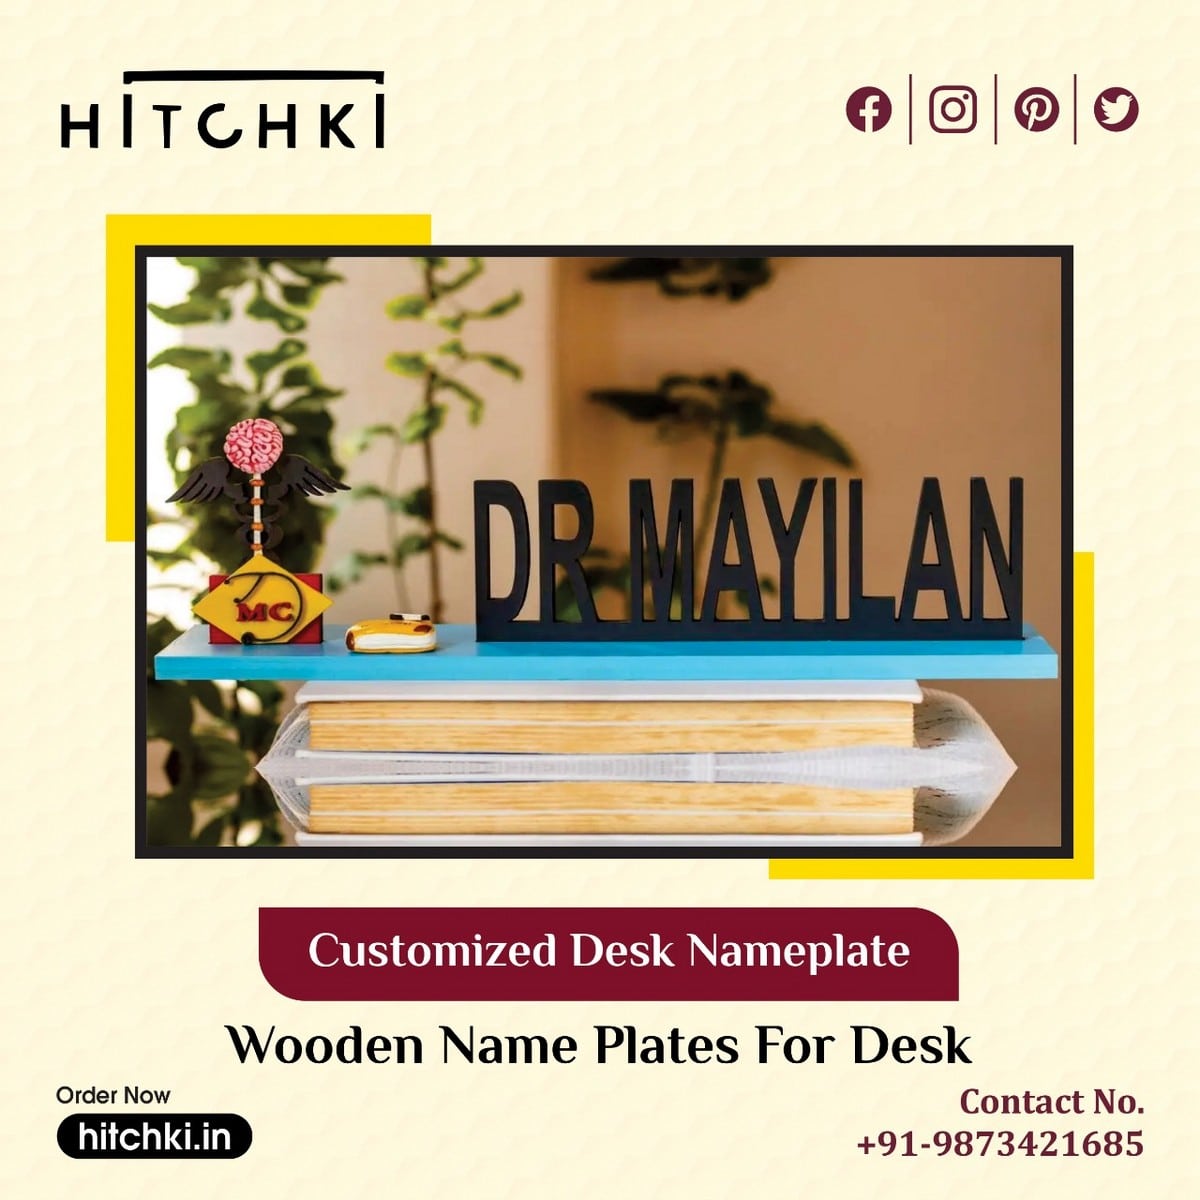 Get Affordable Wooden Name Plates For Desk